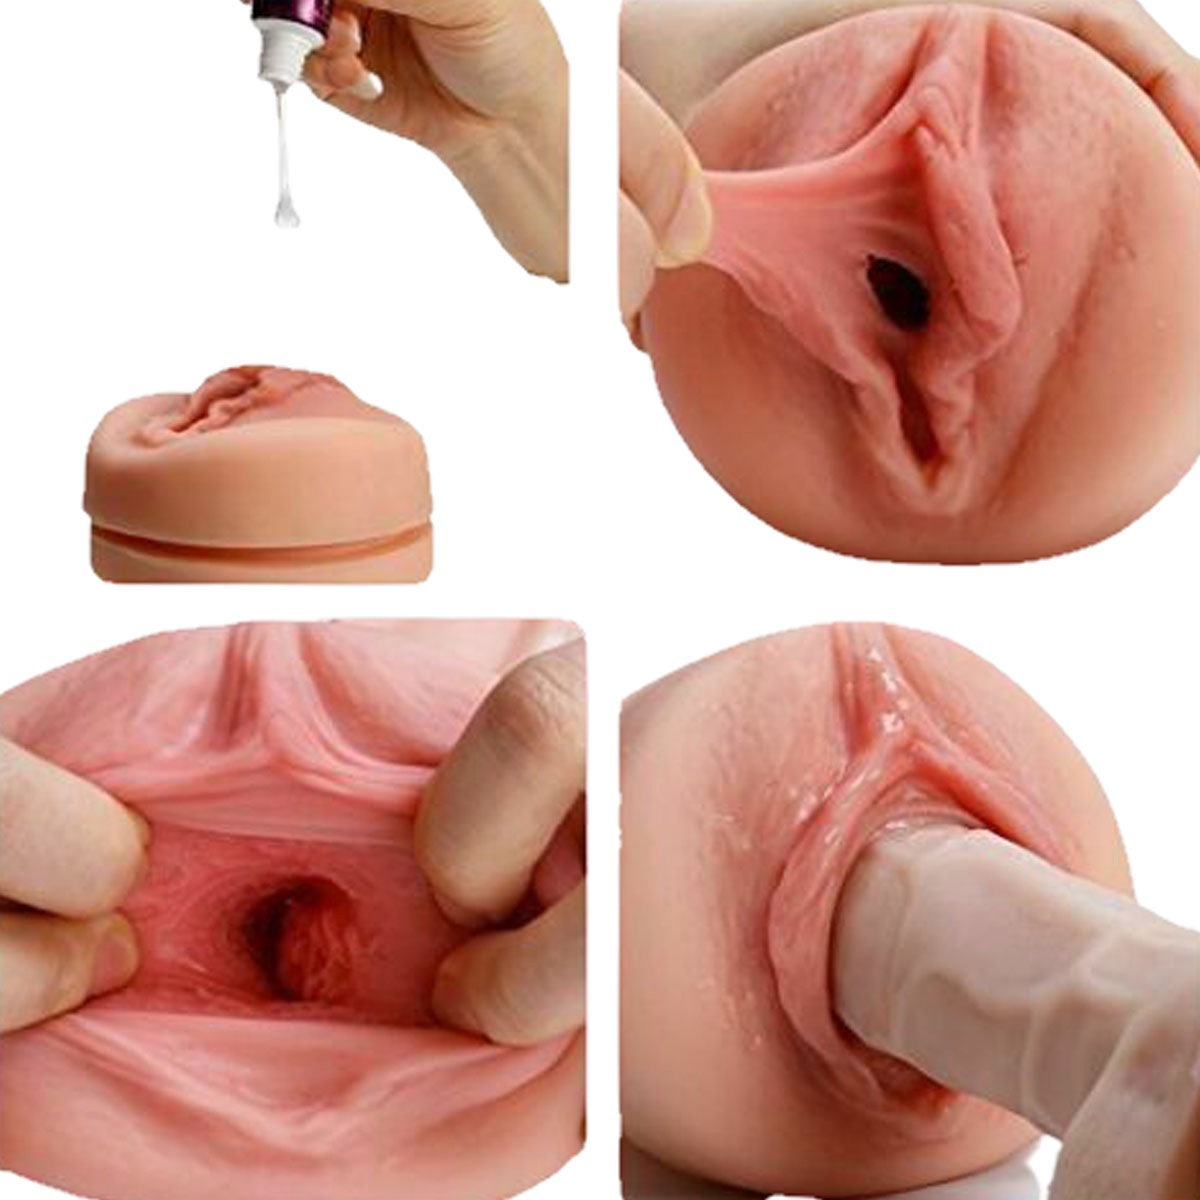 мастурбация при помощи искусственной вагины фото 1